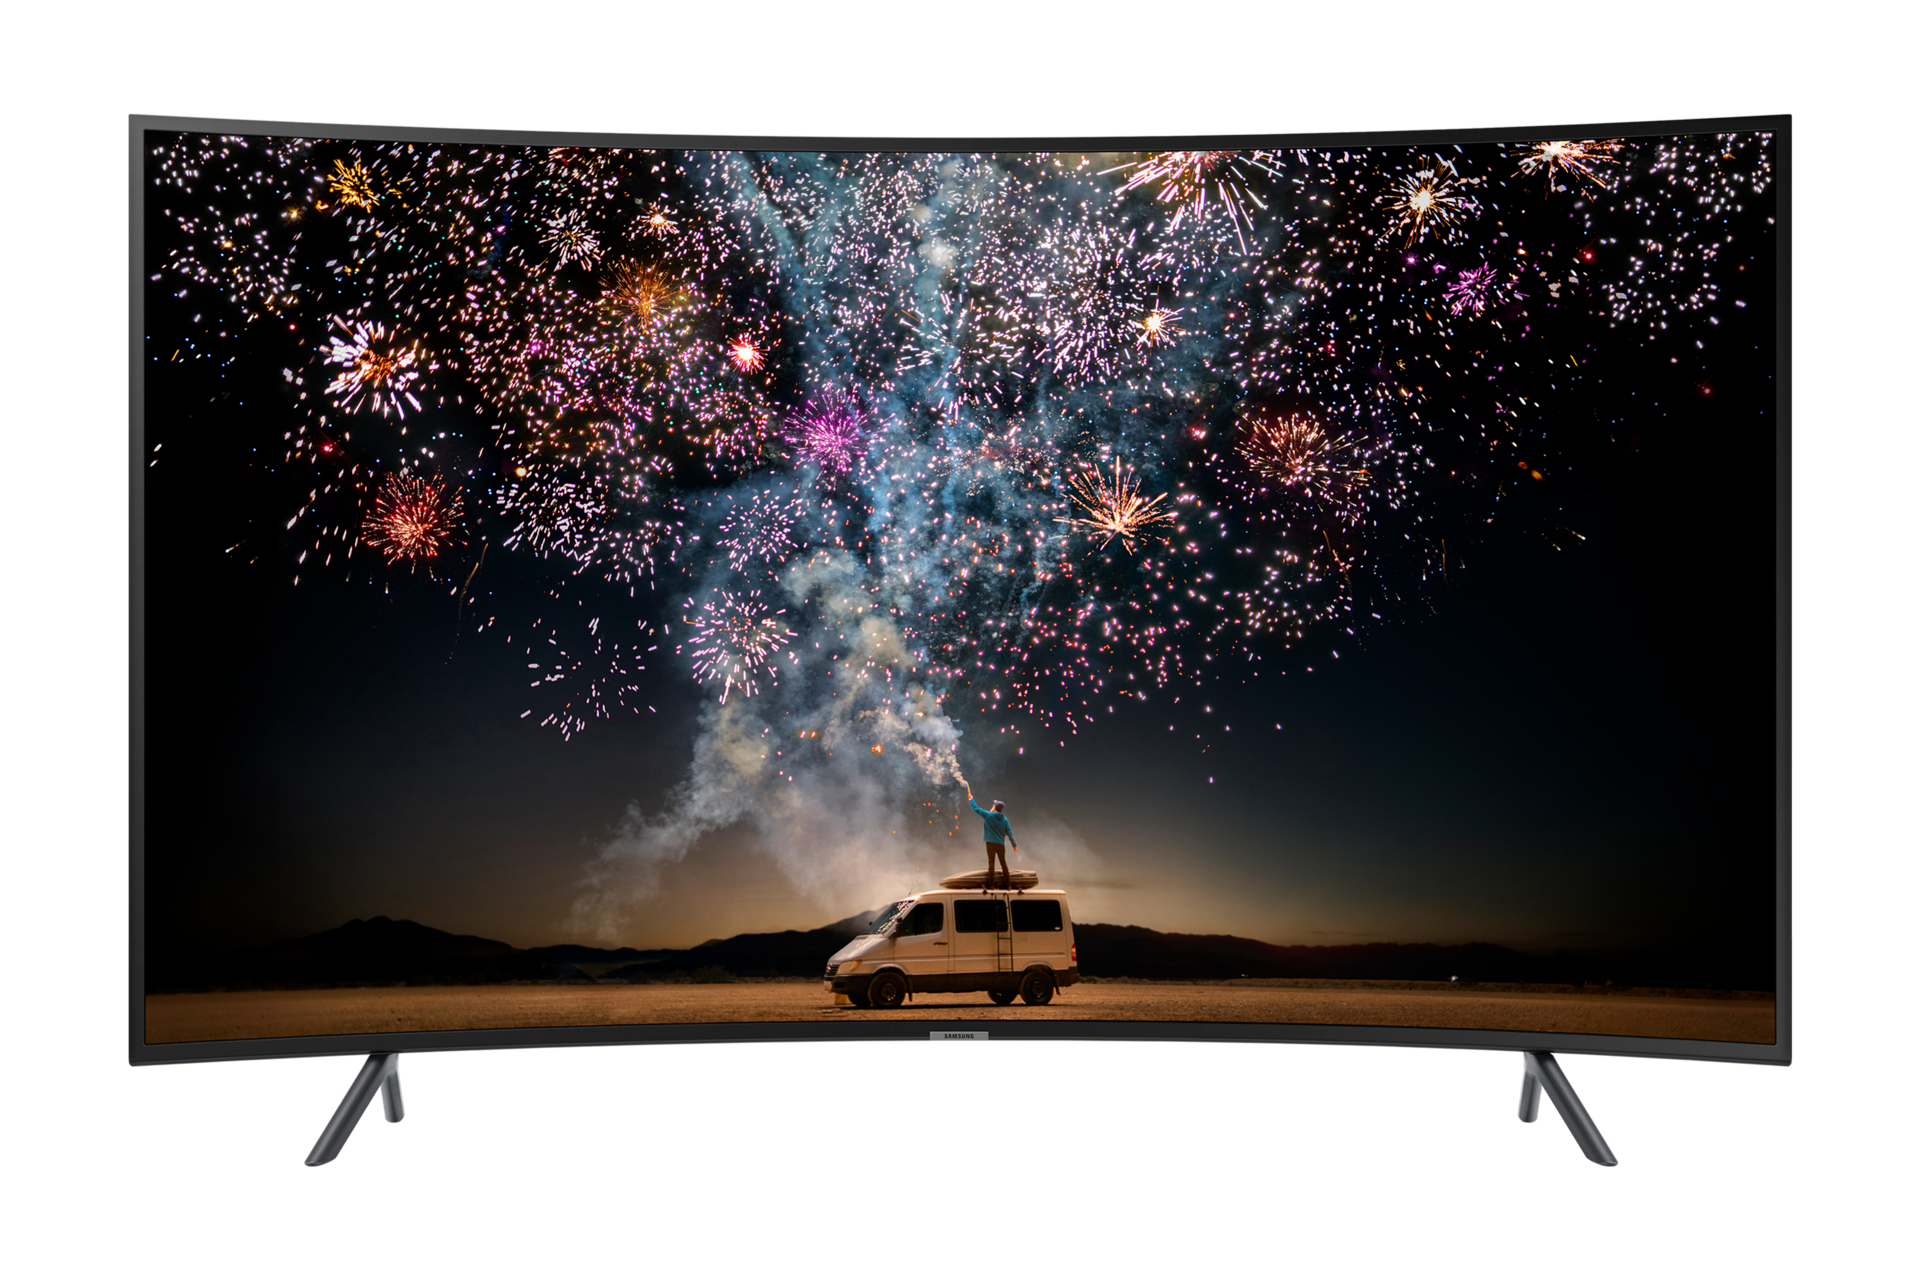 Chiêm ngưỡng mặt trước Tivi màn hình cong Samsung 55 Inch độ phân giải 4K UHD chân thực cùng công nghệ UHD Dimming cho hình ảnh chân thực, sống động đến bất ngờ